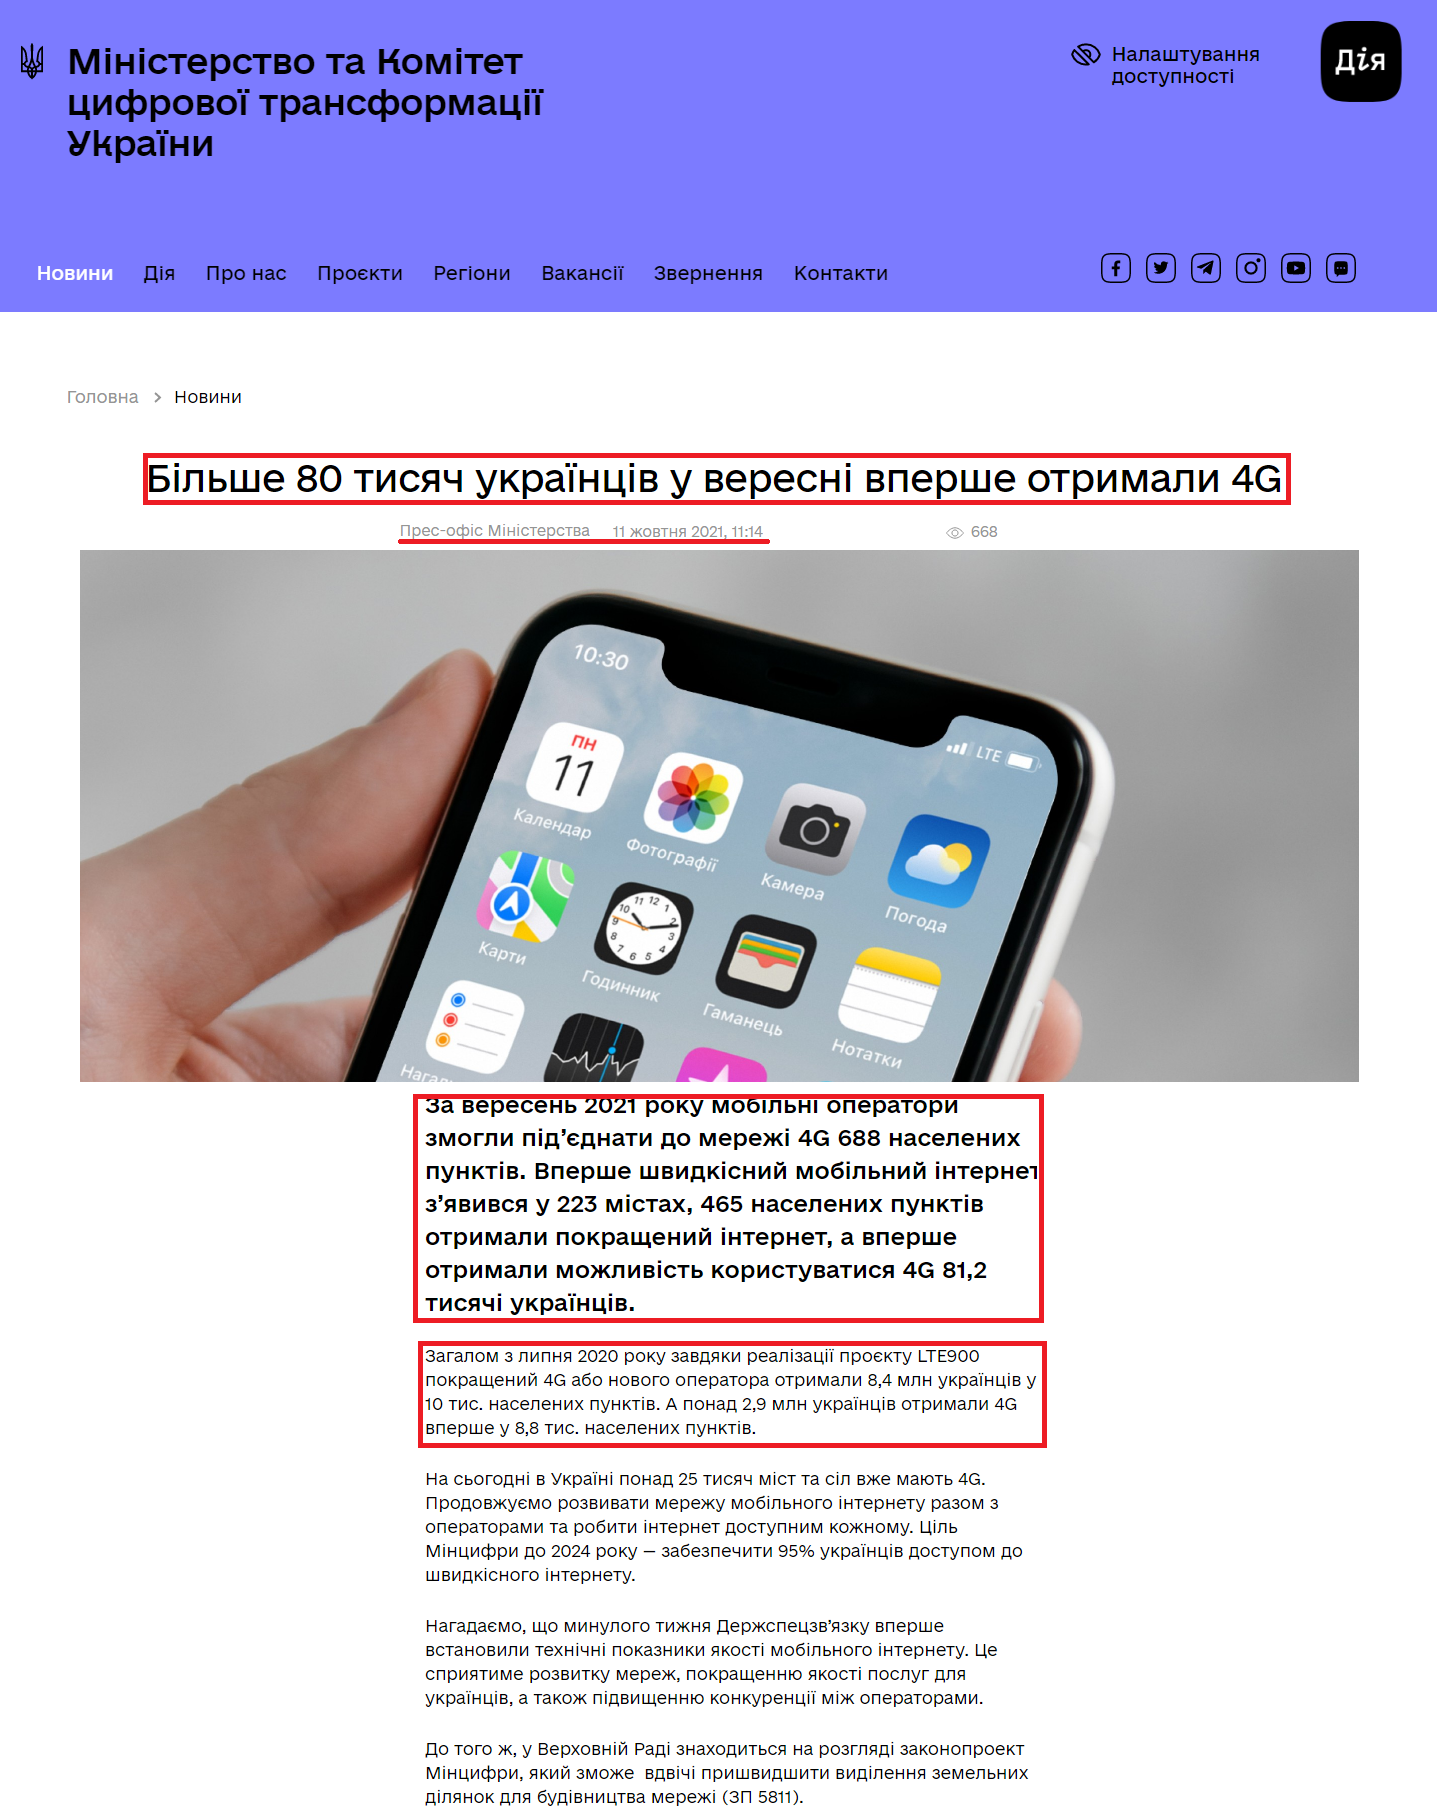 https://thedigital.gov.ua/news/bilshe-80-tisyach-ukraintsiv-u-veresni-vpershe-otrimali-4g